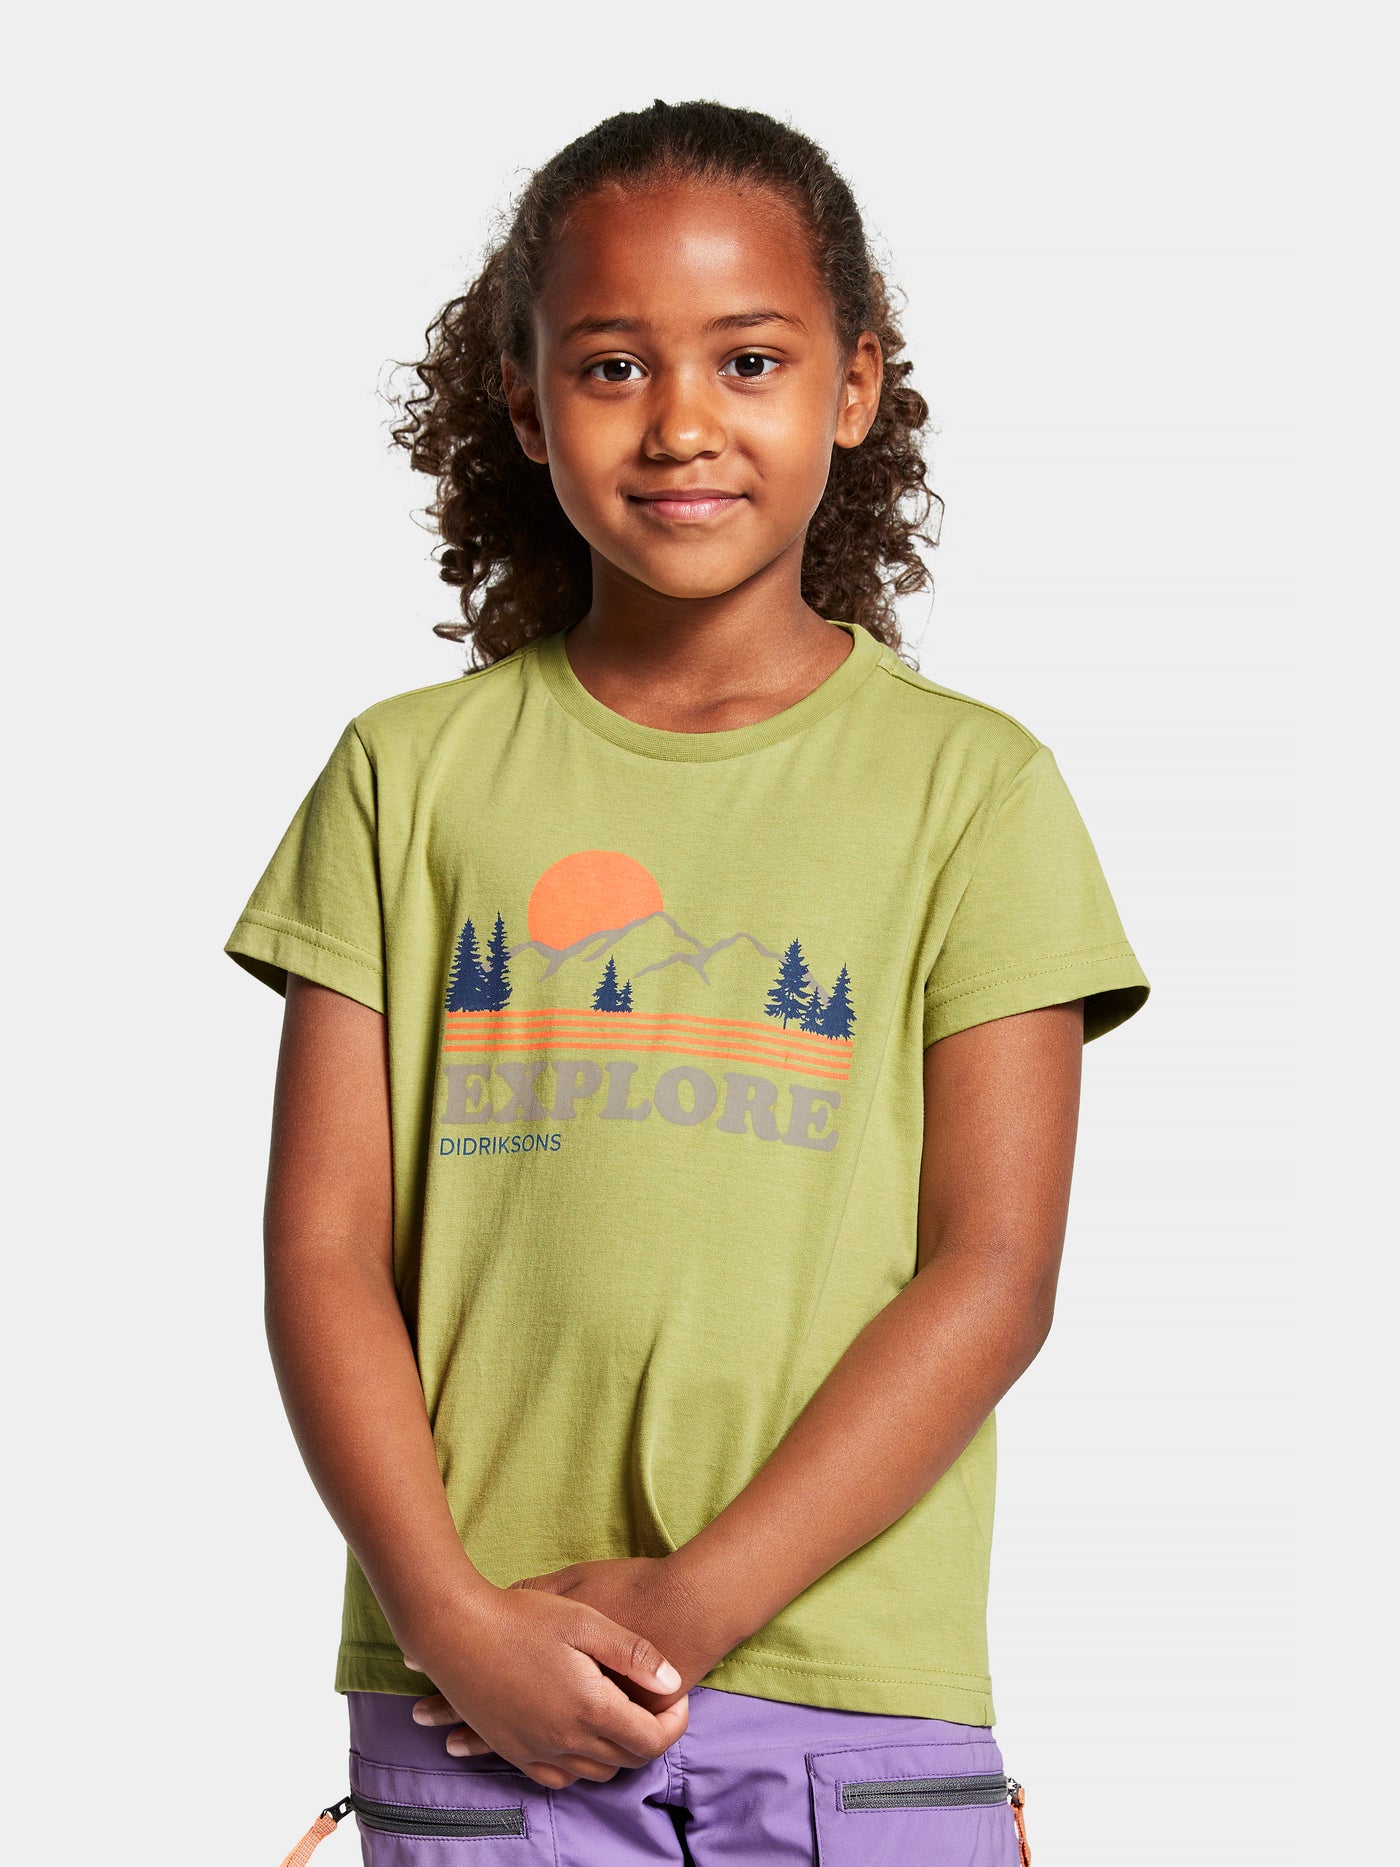 Didriksonsin lasten ja nuorten Mynta logo t-paita vaaleanvihreässä sävyssä tytön päällä edestä kuvattuna lähikuvassa